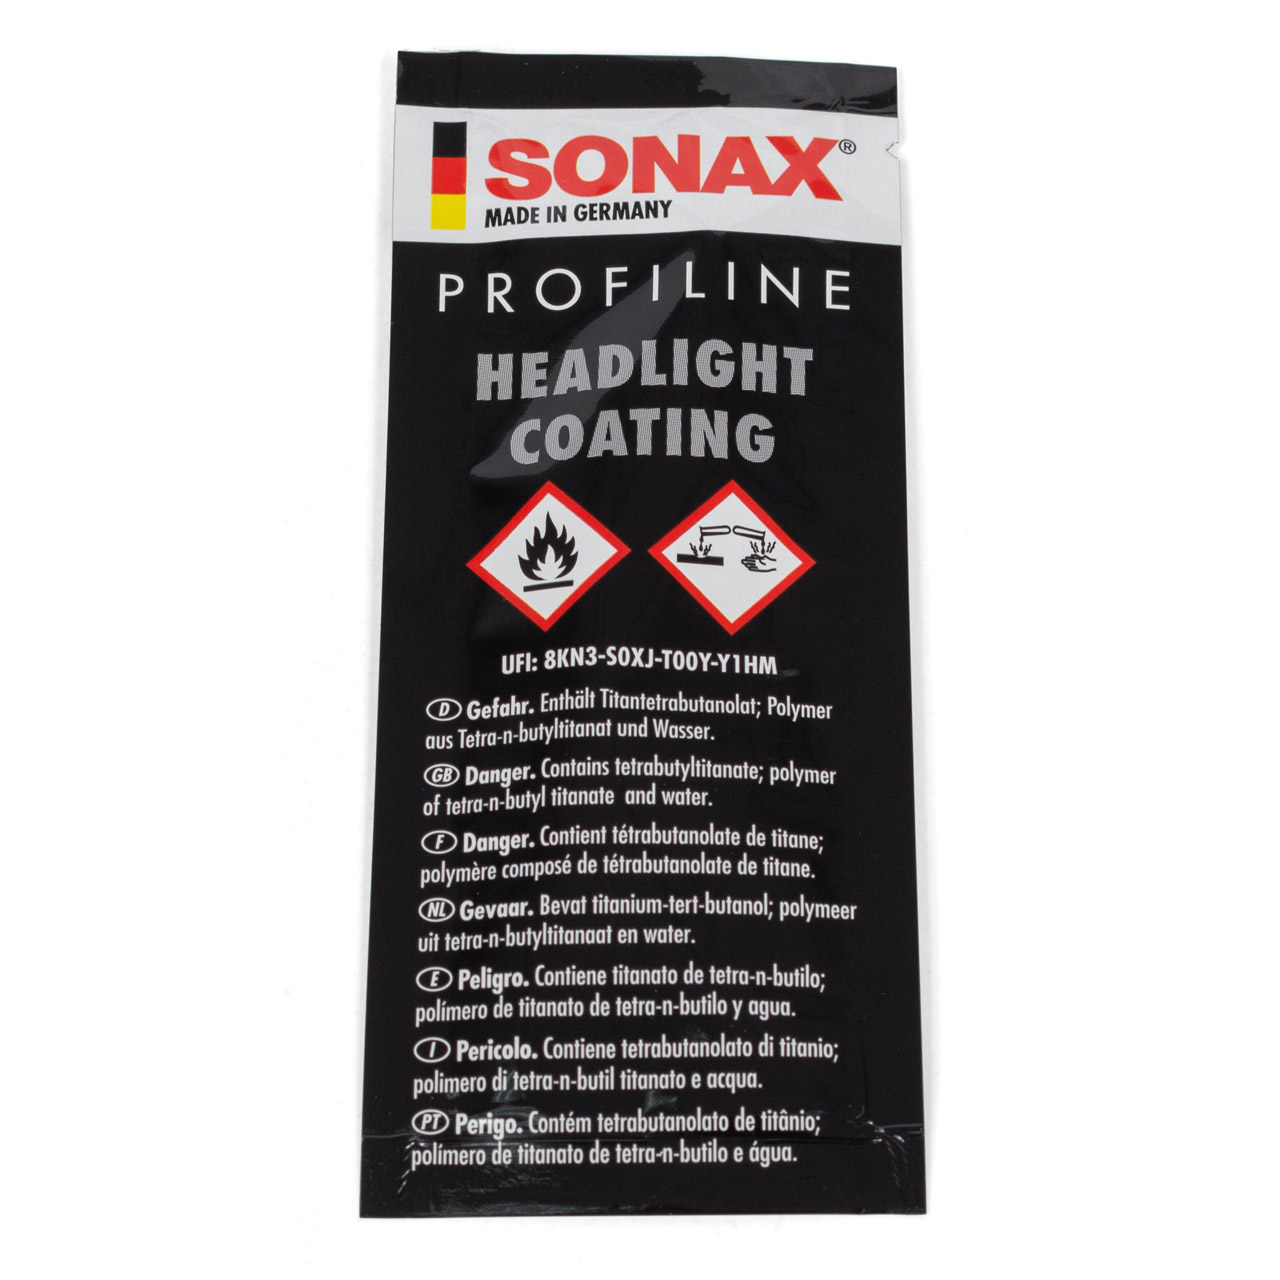 SONAX 02765410 PROFILINE Headlight Coating Scheinwerfer Langzeit Versiegelung 10x 5ml